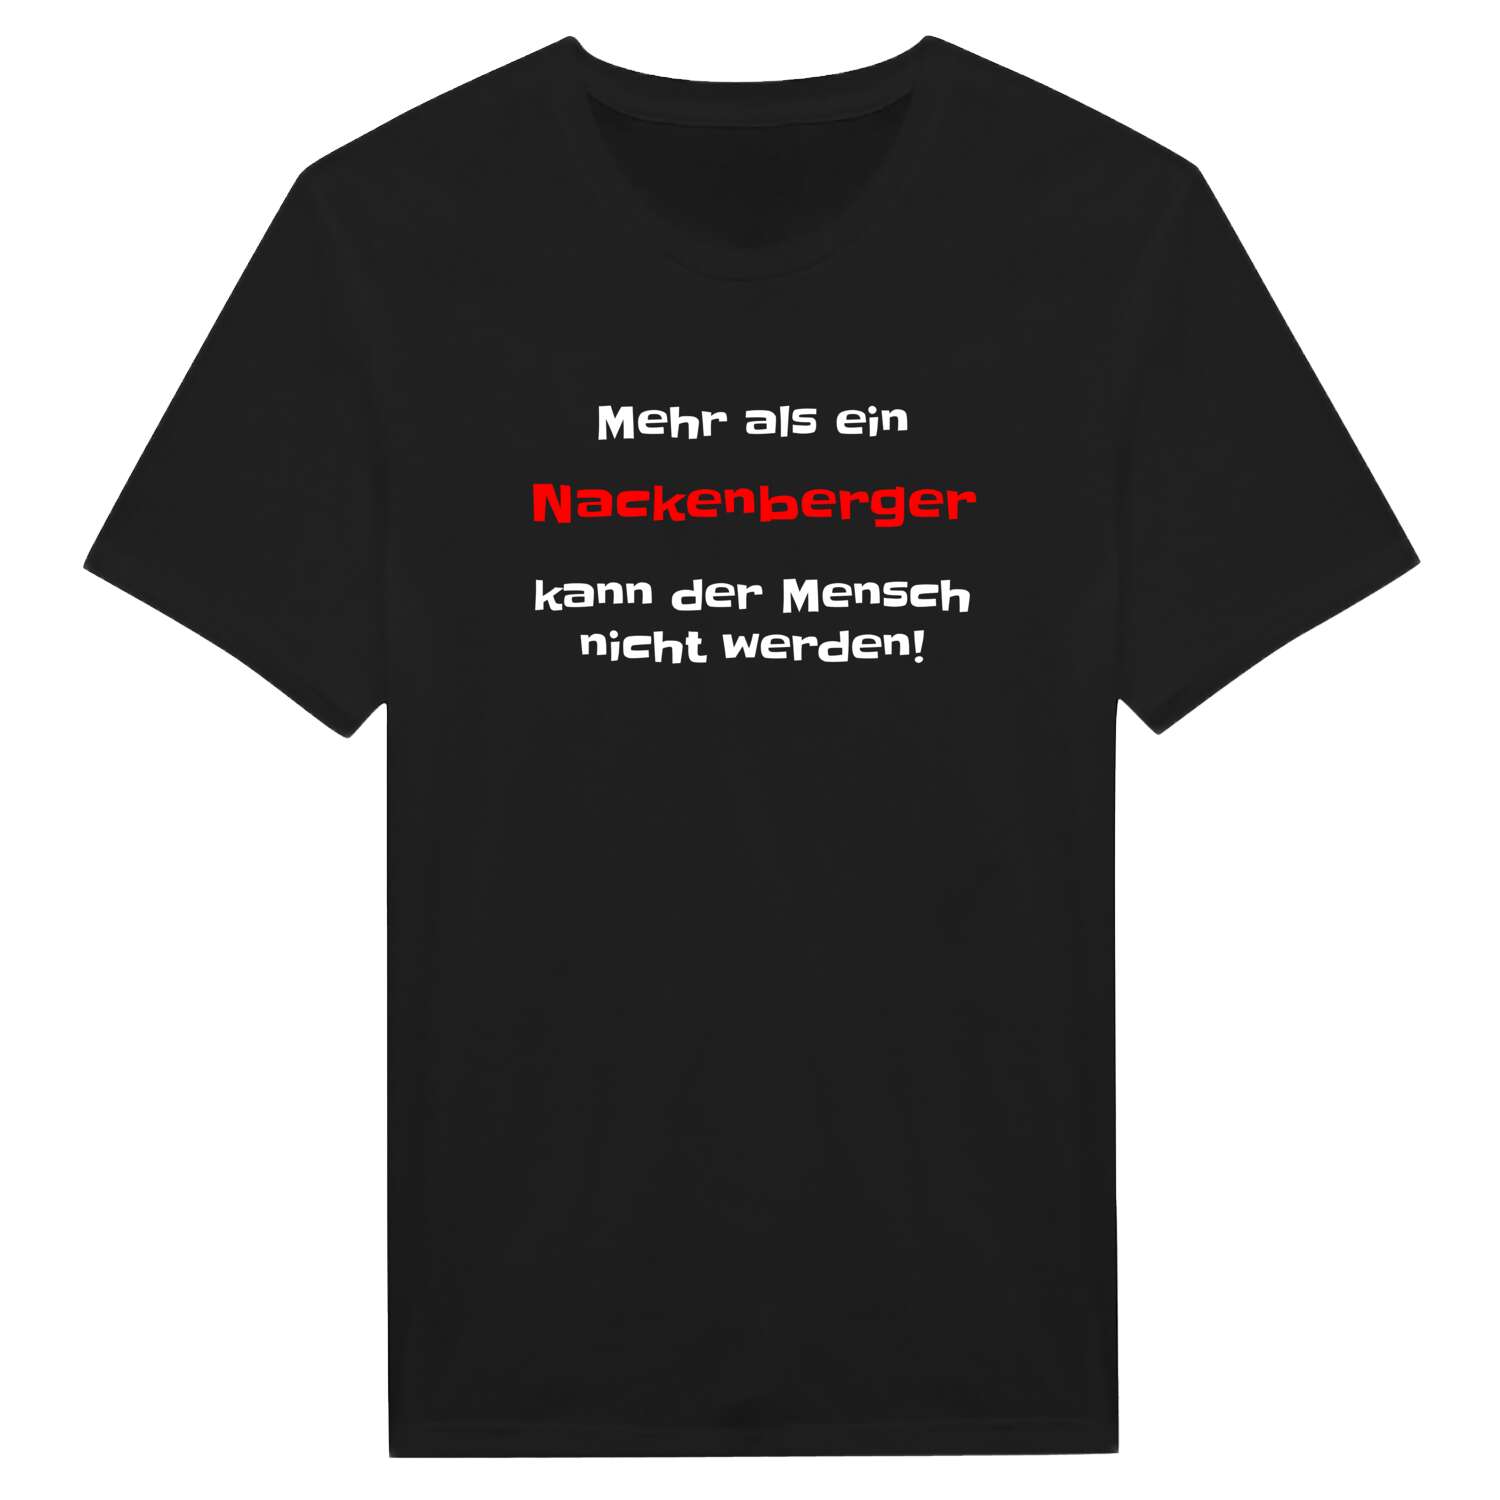 Nackenberg T-Shirt »Mehr als ein«